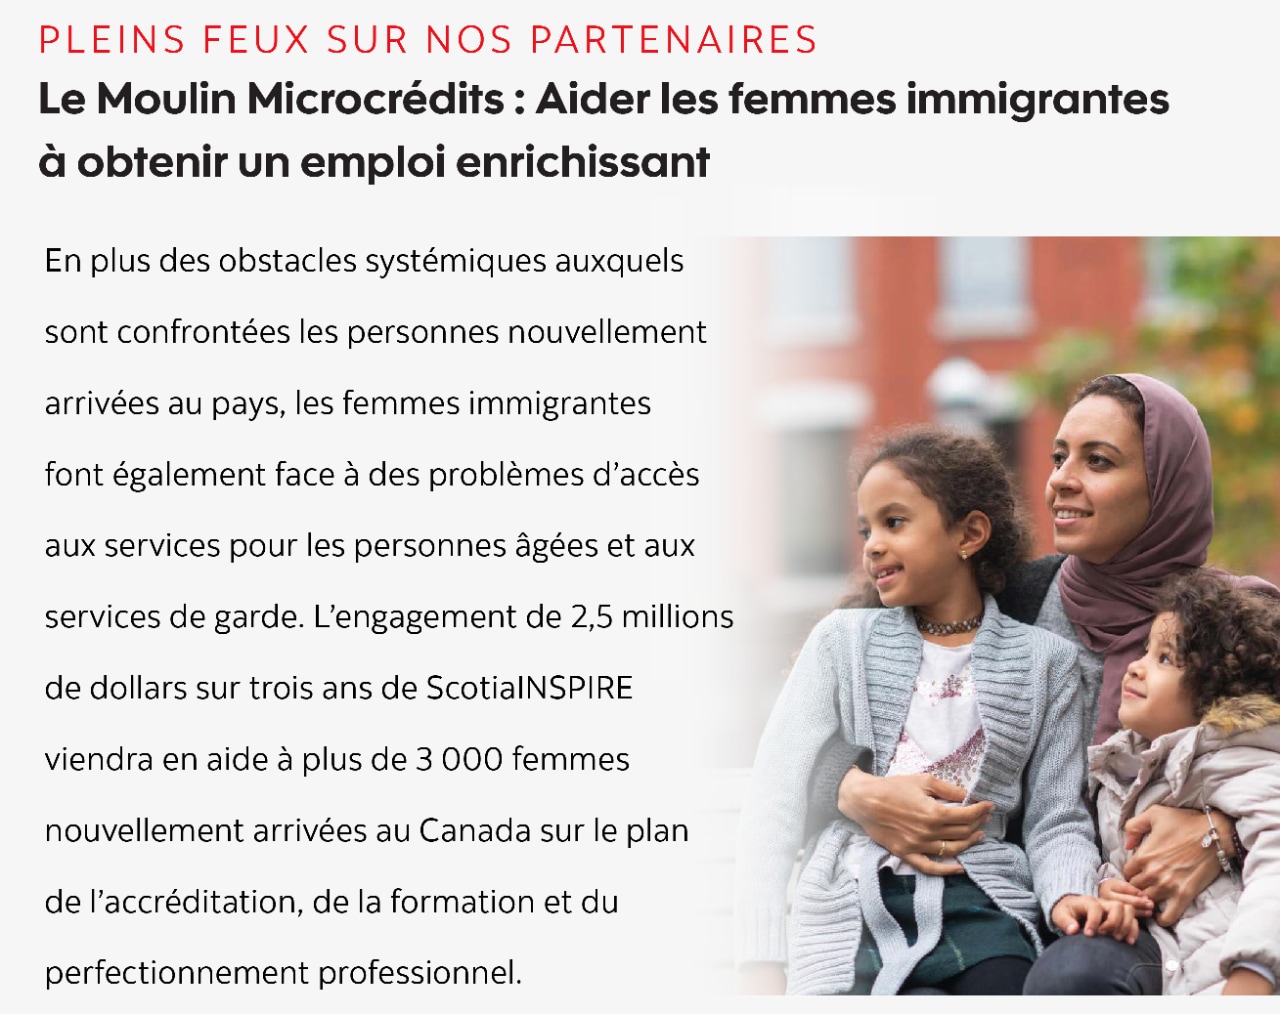 PLEINS FEUX SUR NOS PARTENAIRES - Le Moulin Microcrédits